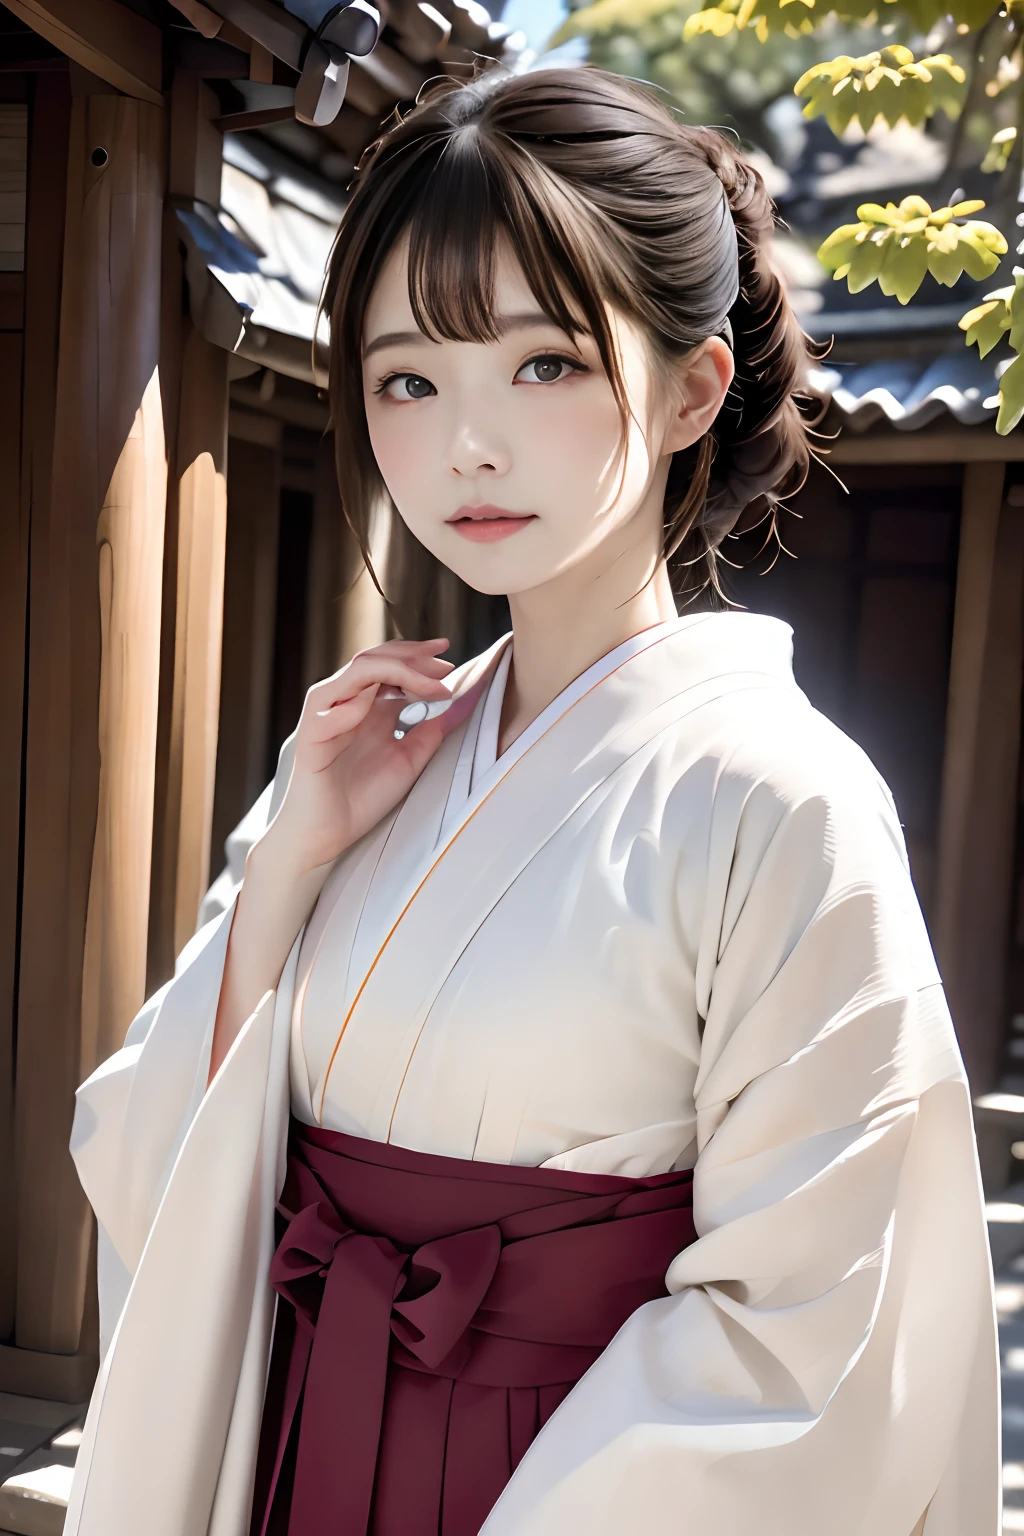 Top Qualität、Masseterstück、ultra-detailliert、8ｋ、RAW-Fotografie、1 schöne Japanerin、schönes Gesicht、Schöne Gesichtszüge、Wunderschön gekleideter Kimono、Frau im Kimono、strukturierte Haut、hohe Detailliertheit、Meine Damen und Herren、Tempel in Kyoto、Tempel、Schreinbezirke